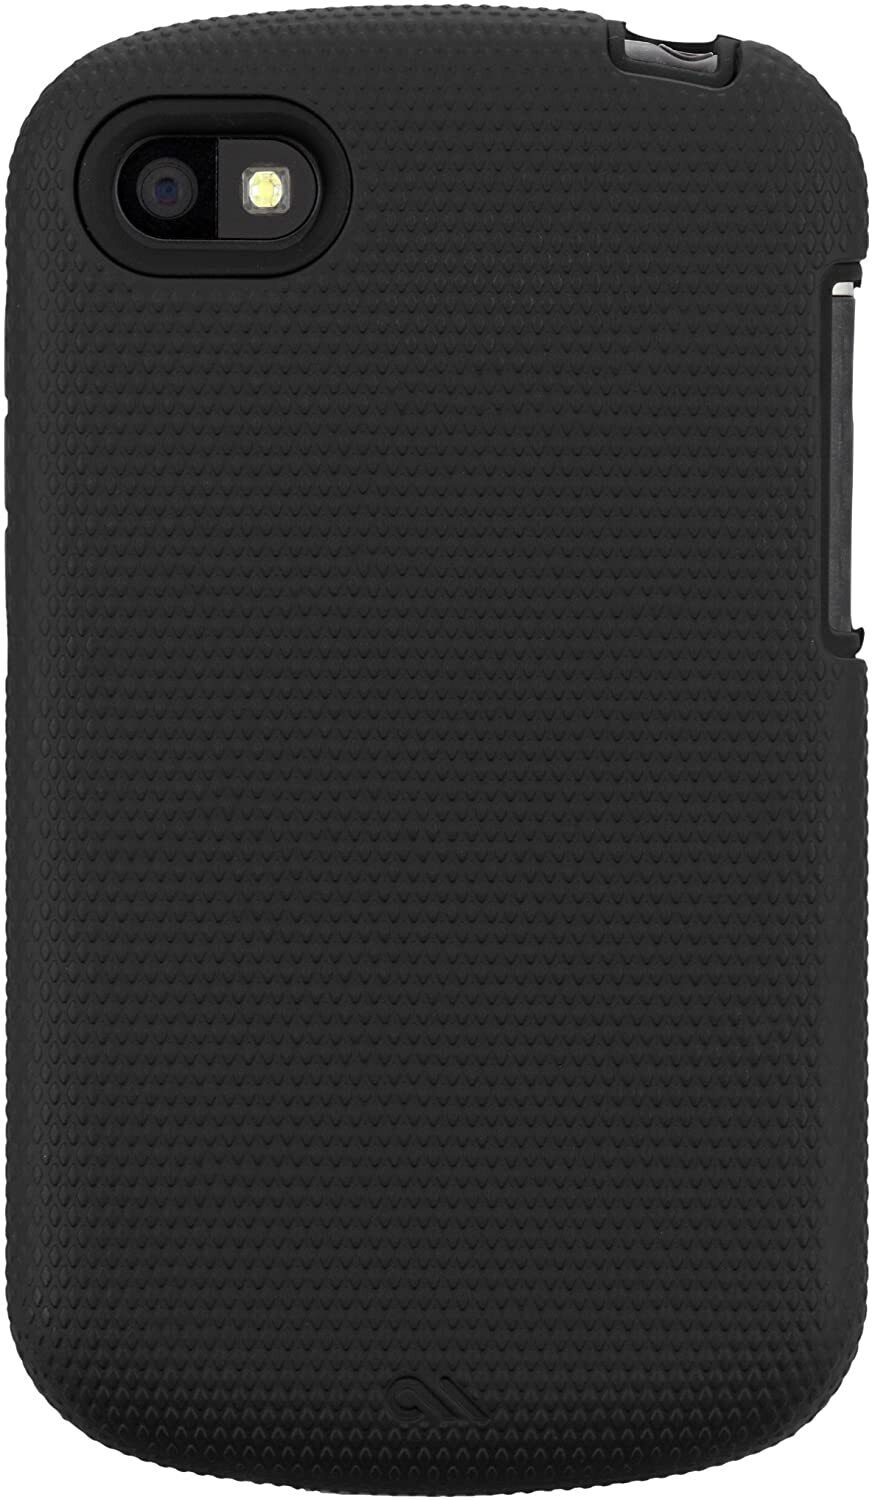 GENUINE CASEMATE Blackberry Q10 Tough Case Hard Shell Cover CM027465 - Black